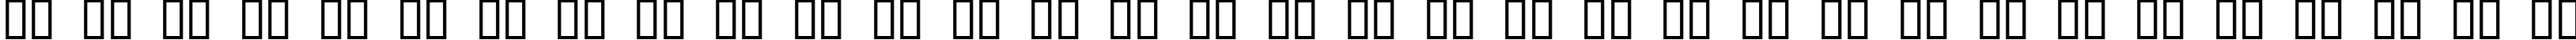 Пример написания русского алфавита шрифтом FortuneCity Comic Outline